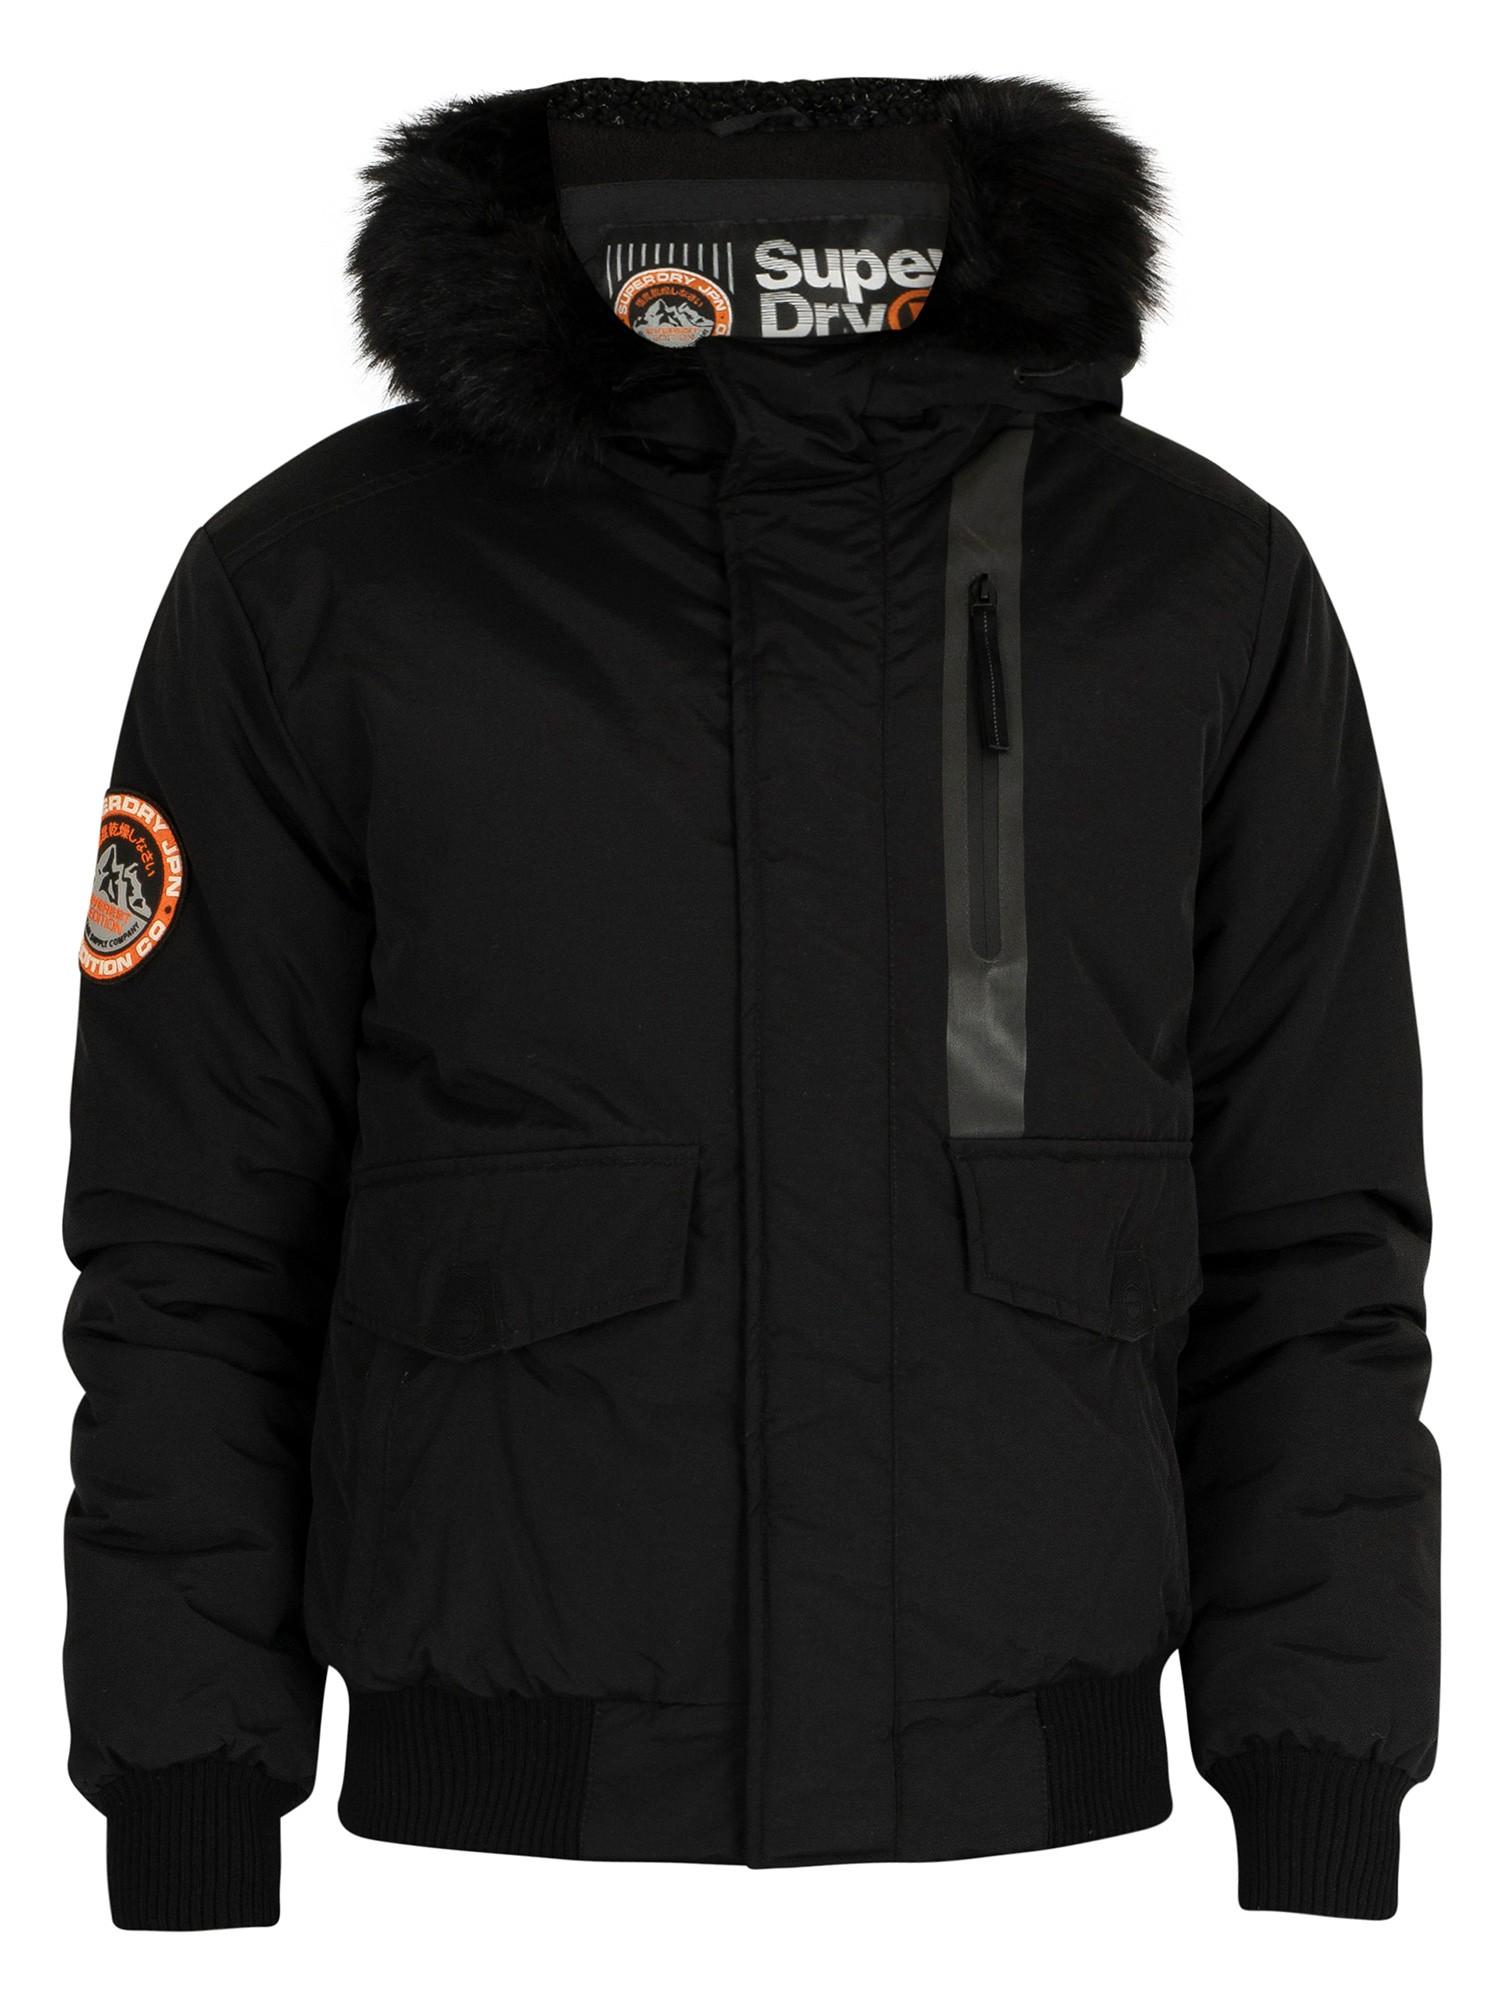 Superdry Fur Everest Bomber Jacket in Black for Men - Lyst